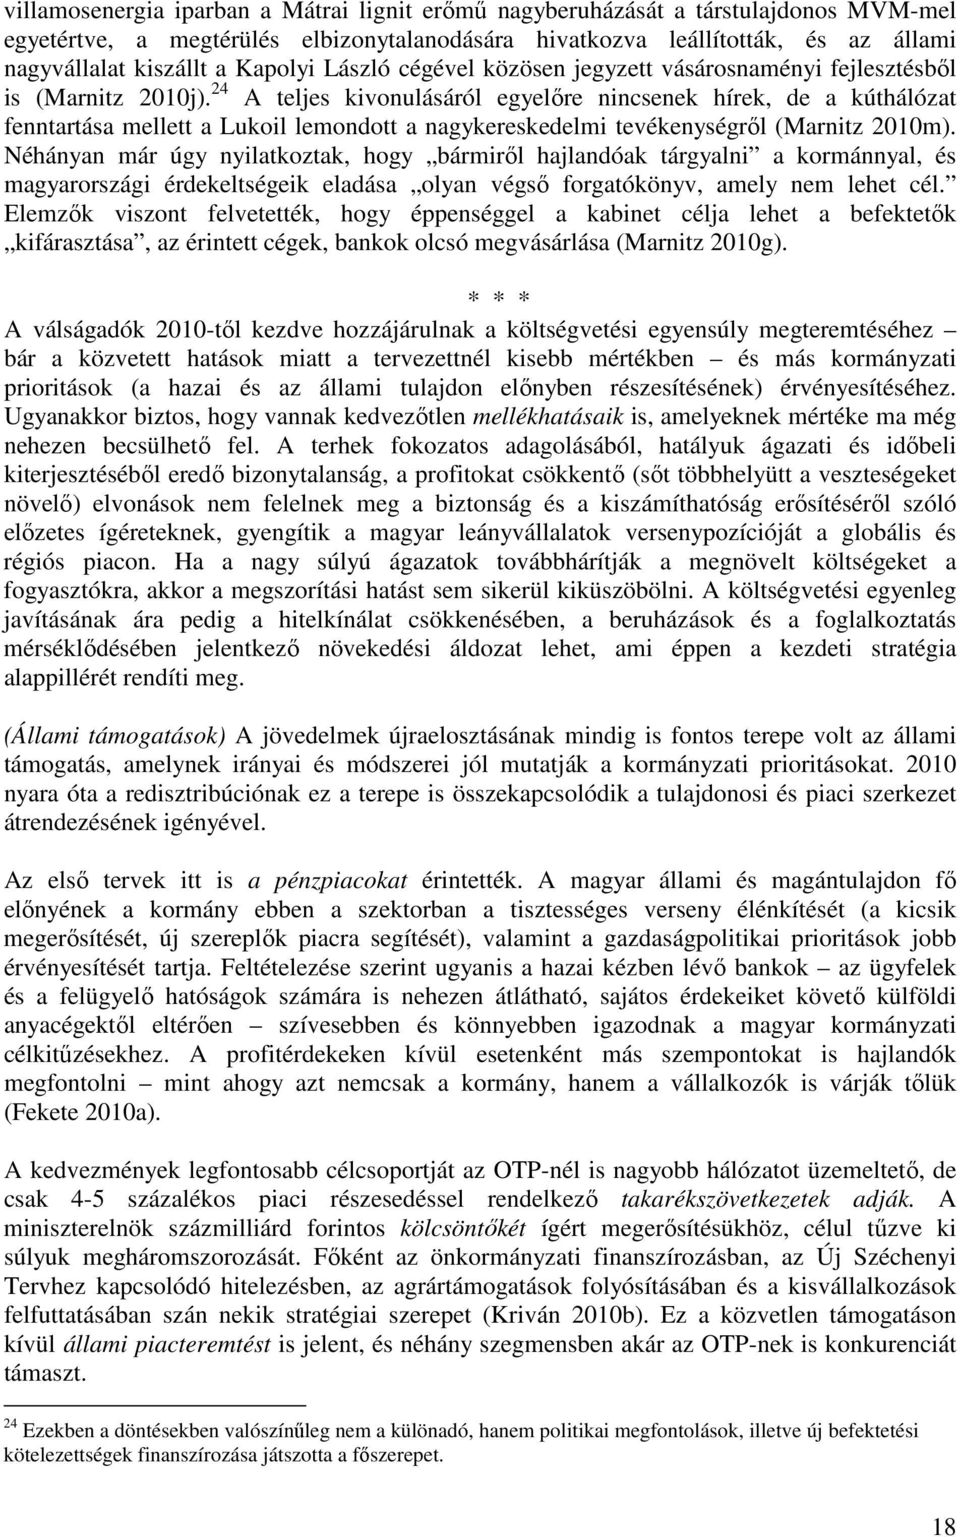 24 A teljes kivonulásáról egyelőre nincsenek hírek, de a kúthálózat fenntartása mellett a Lukoil lemondott a nagykereskedelmi tevékenységről (Marnitz 2010m).